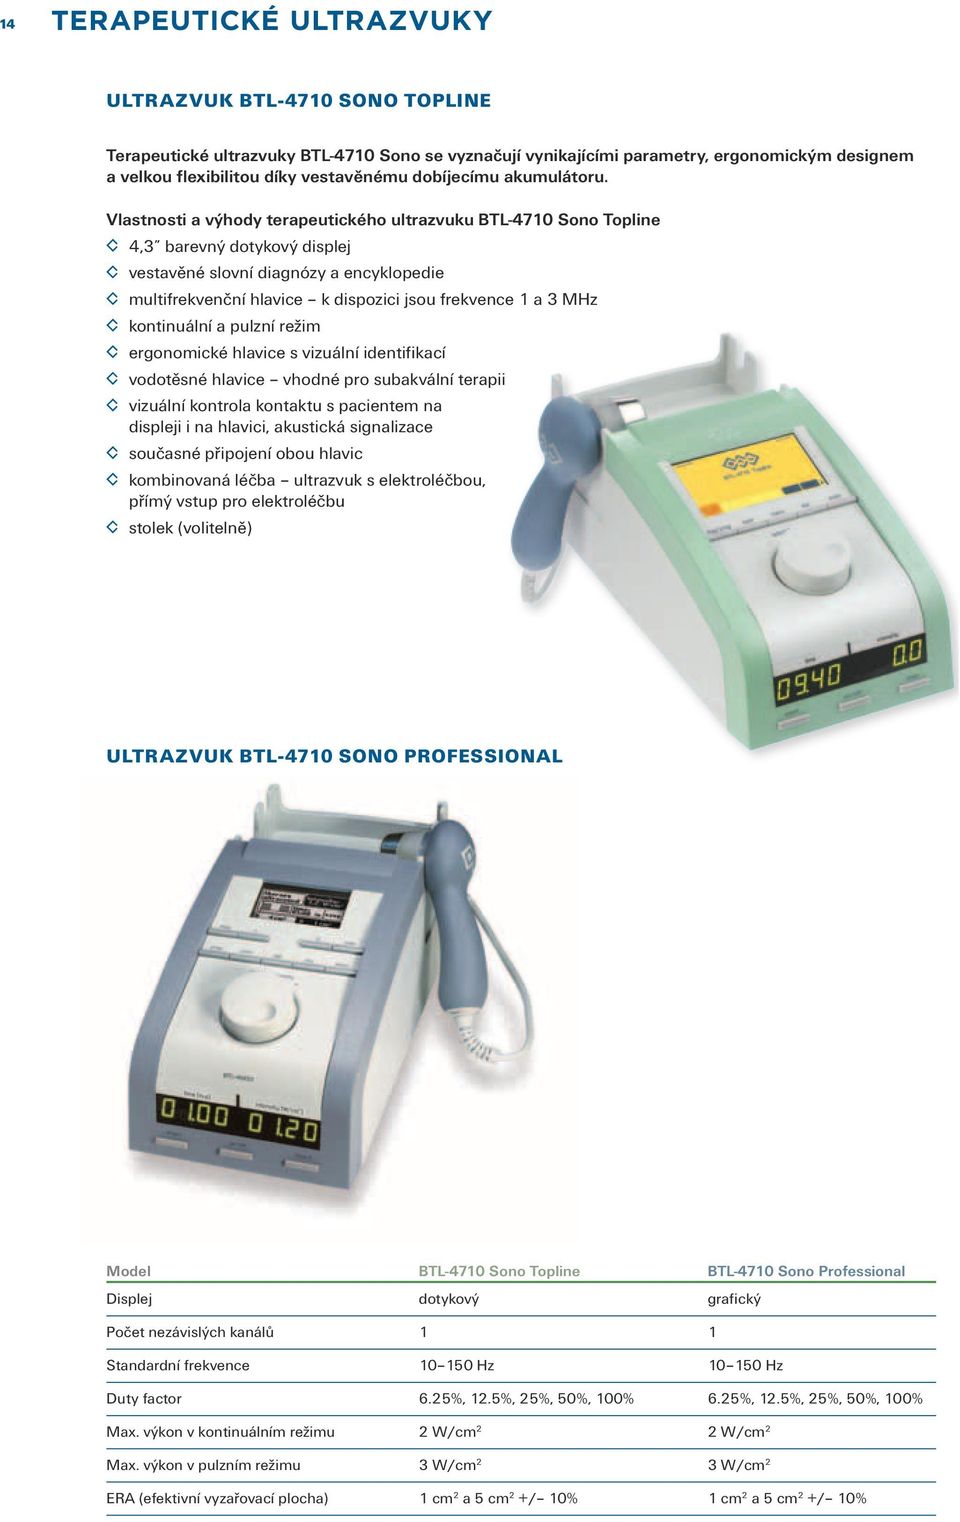 Vlastnosti a výhody terapeutického ultrazvuku BTL-4710 Sono Topline 4,3 barevný dotykový displej vestavěné slovní diagnózy a encyklopedie multifrekvenční hlavice k dispozici jsou frekvence 1 a 3 MHz